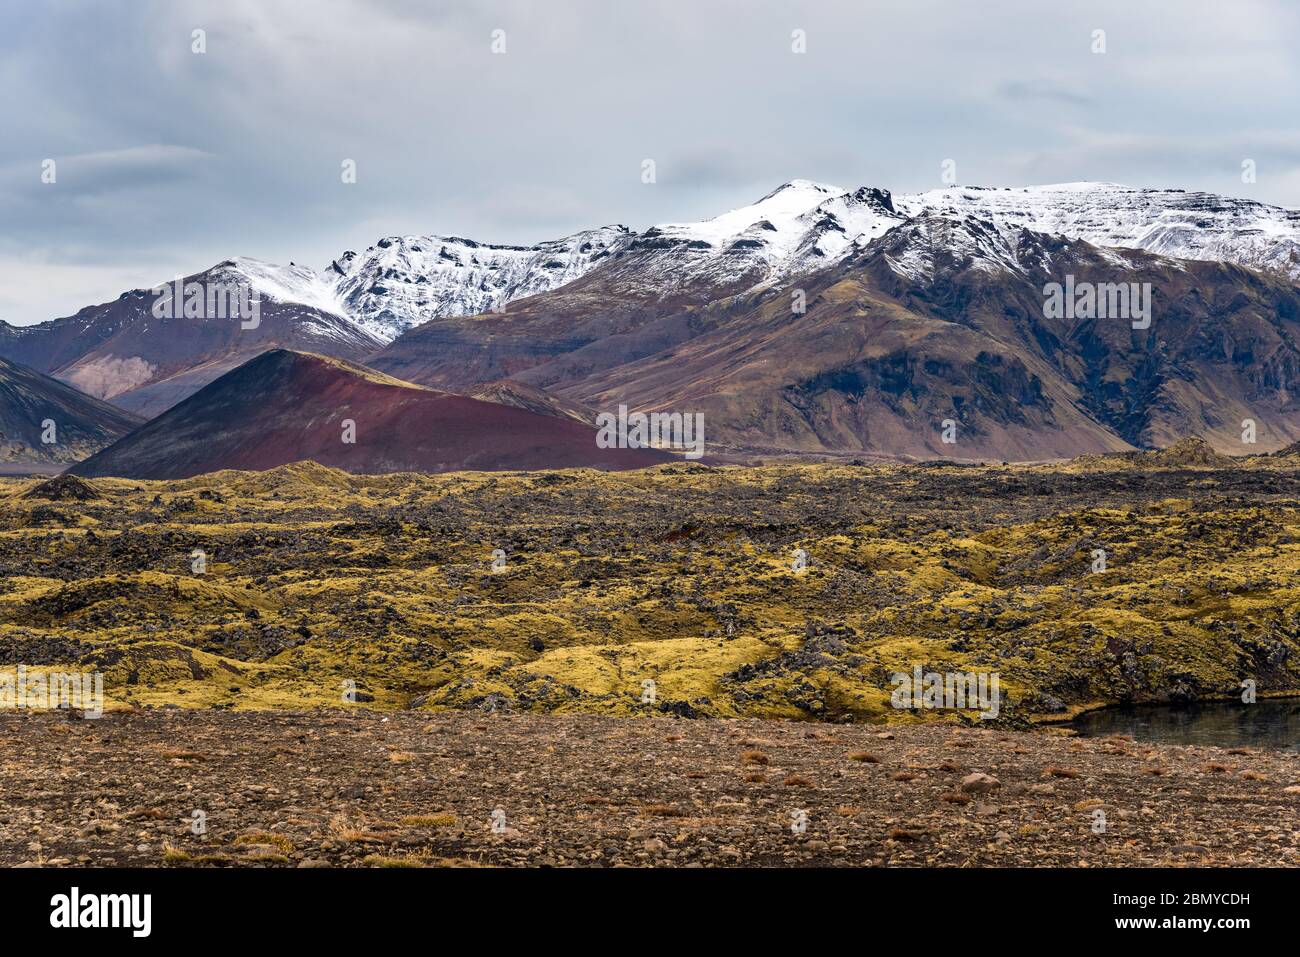 Paysage volcanique spectaculaire avec une plaine de lave couverte de mousse avec des montagnes enneigées en arrière-plan, le jour d'automne couvert Banque D'Images